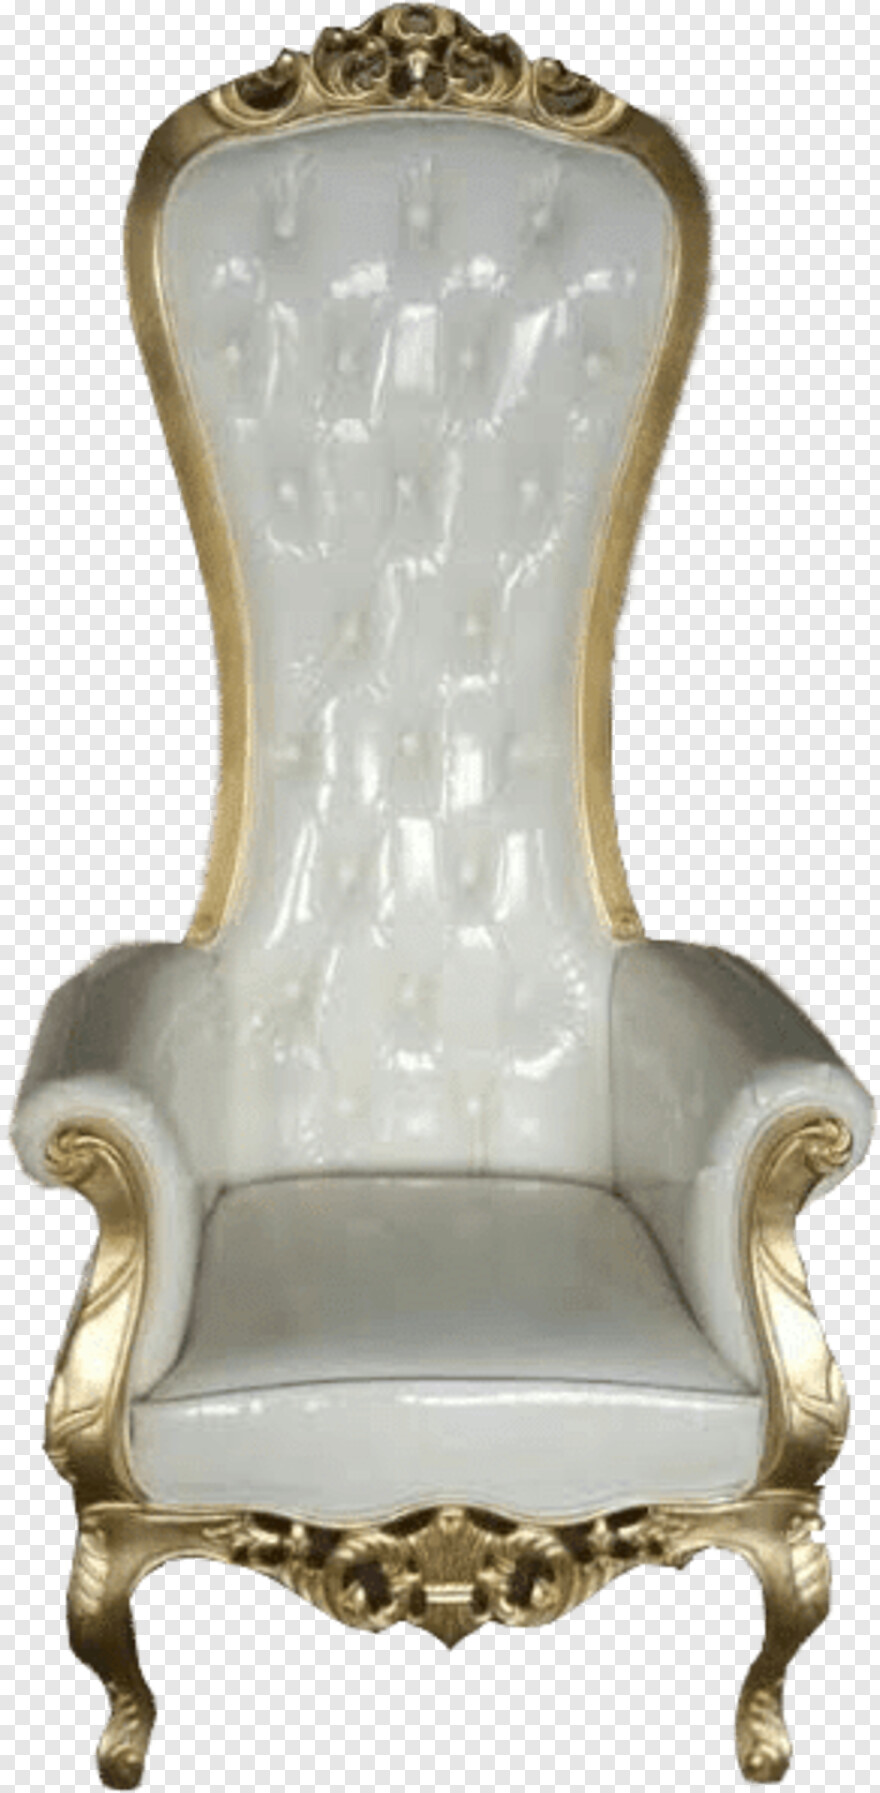 iron-throne # 462564